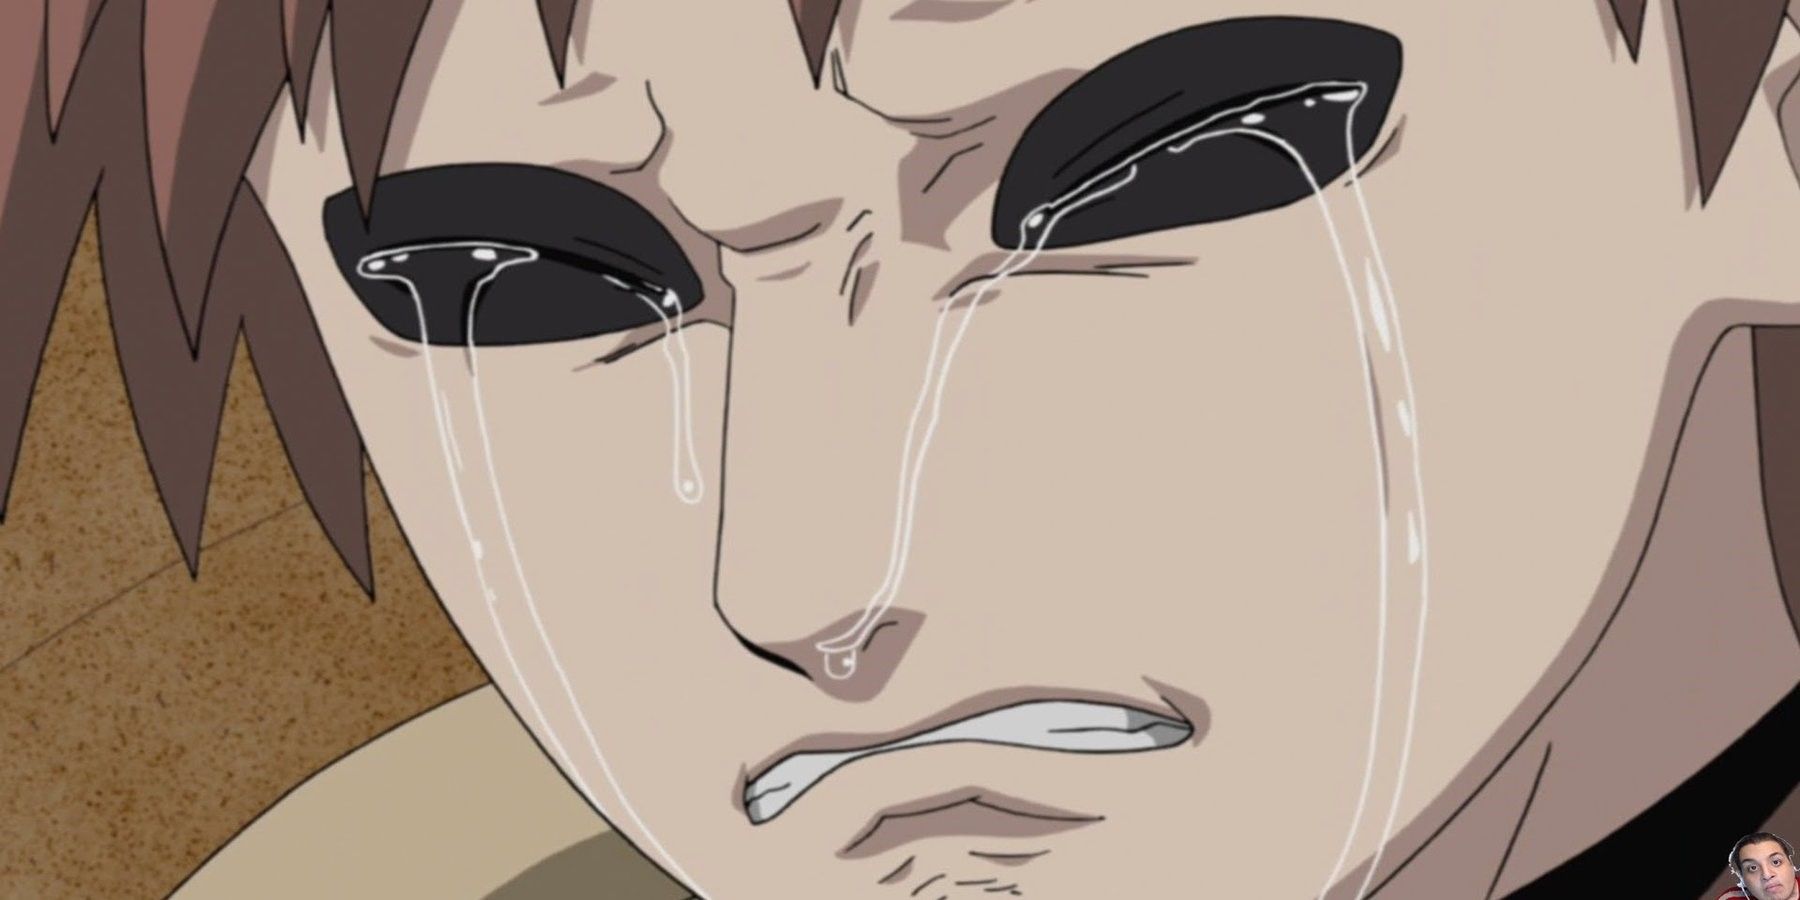 Gaara crying in Naruto